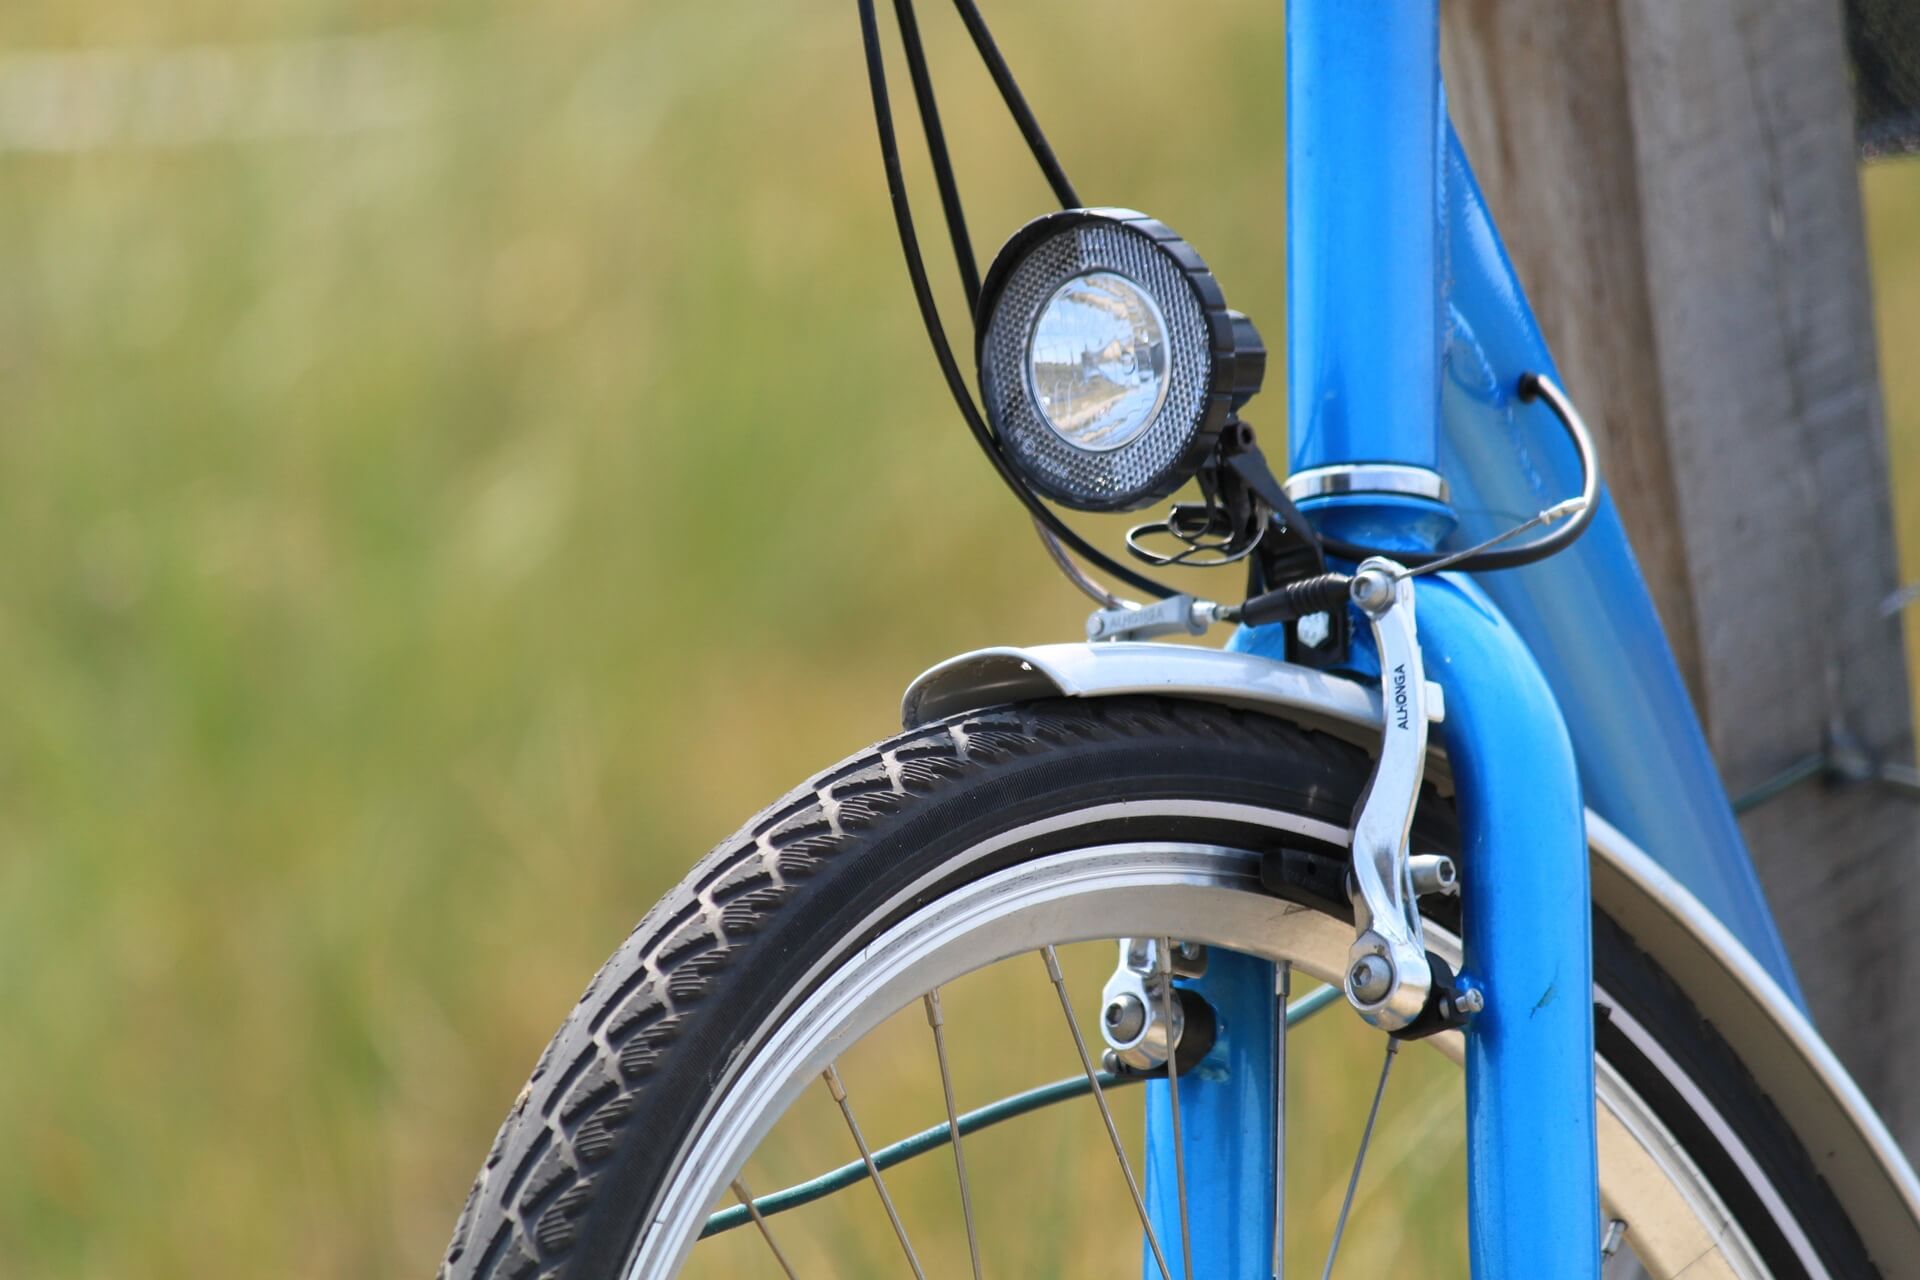 correct Alfabet Dor Buitenband fiets vervangen - Fietsportaal